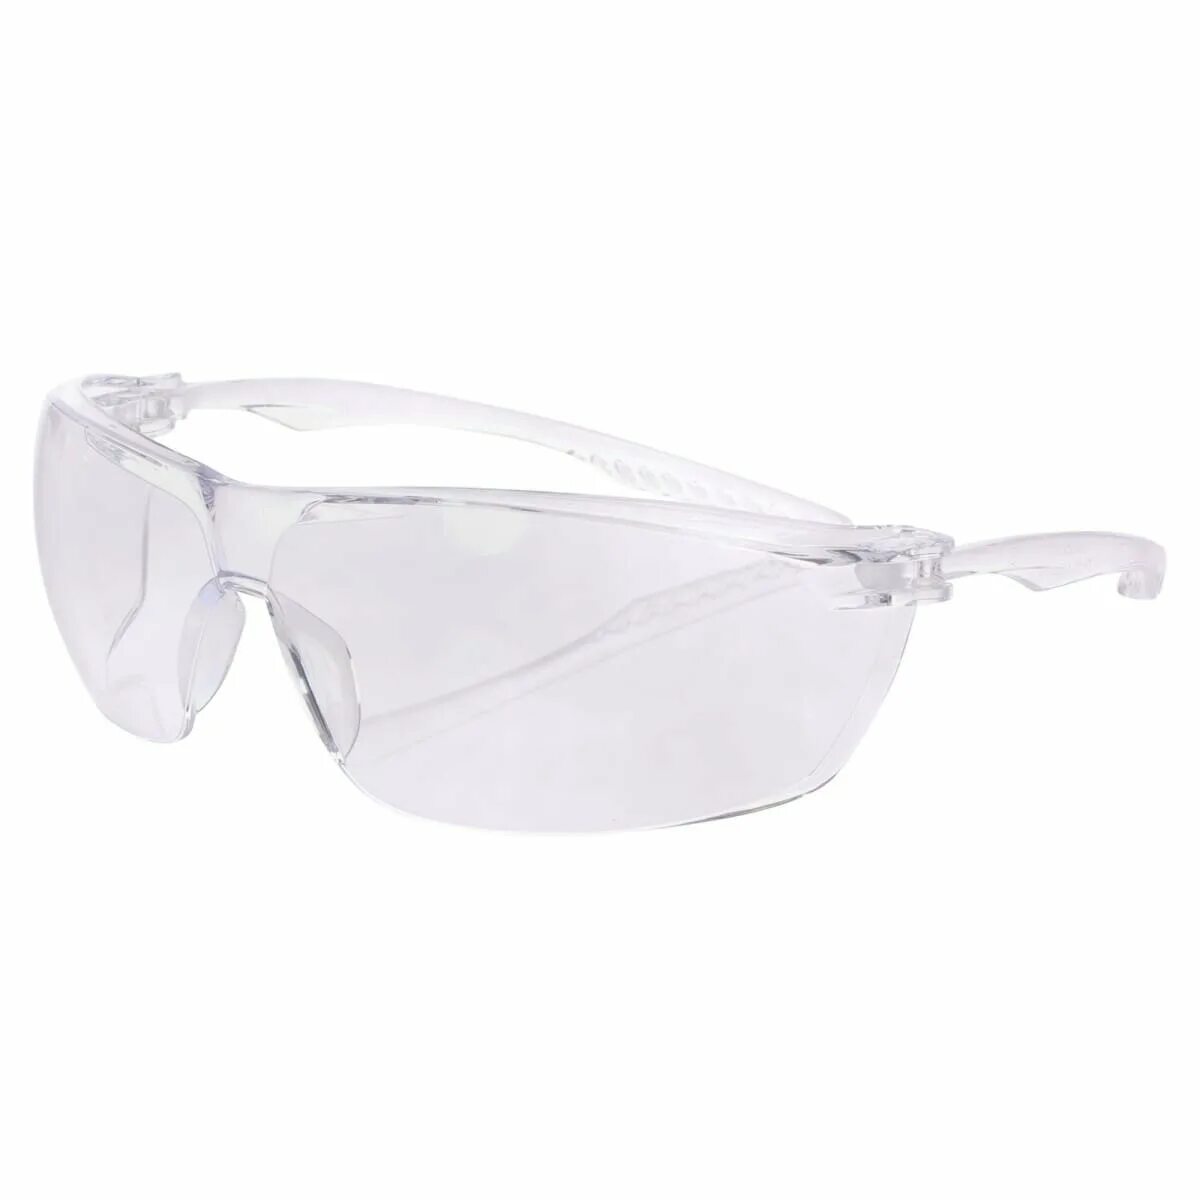 Очки защитные 96232 стандарт. Защитные очки Леруа Мерлен. Krafter Surgut очки защитные желтый. Очки защитные Krafter 2, 2-1,2 незапотевающие.